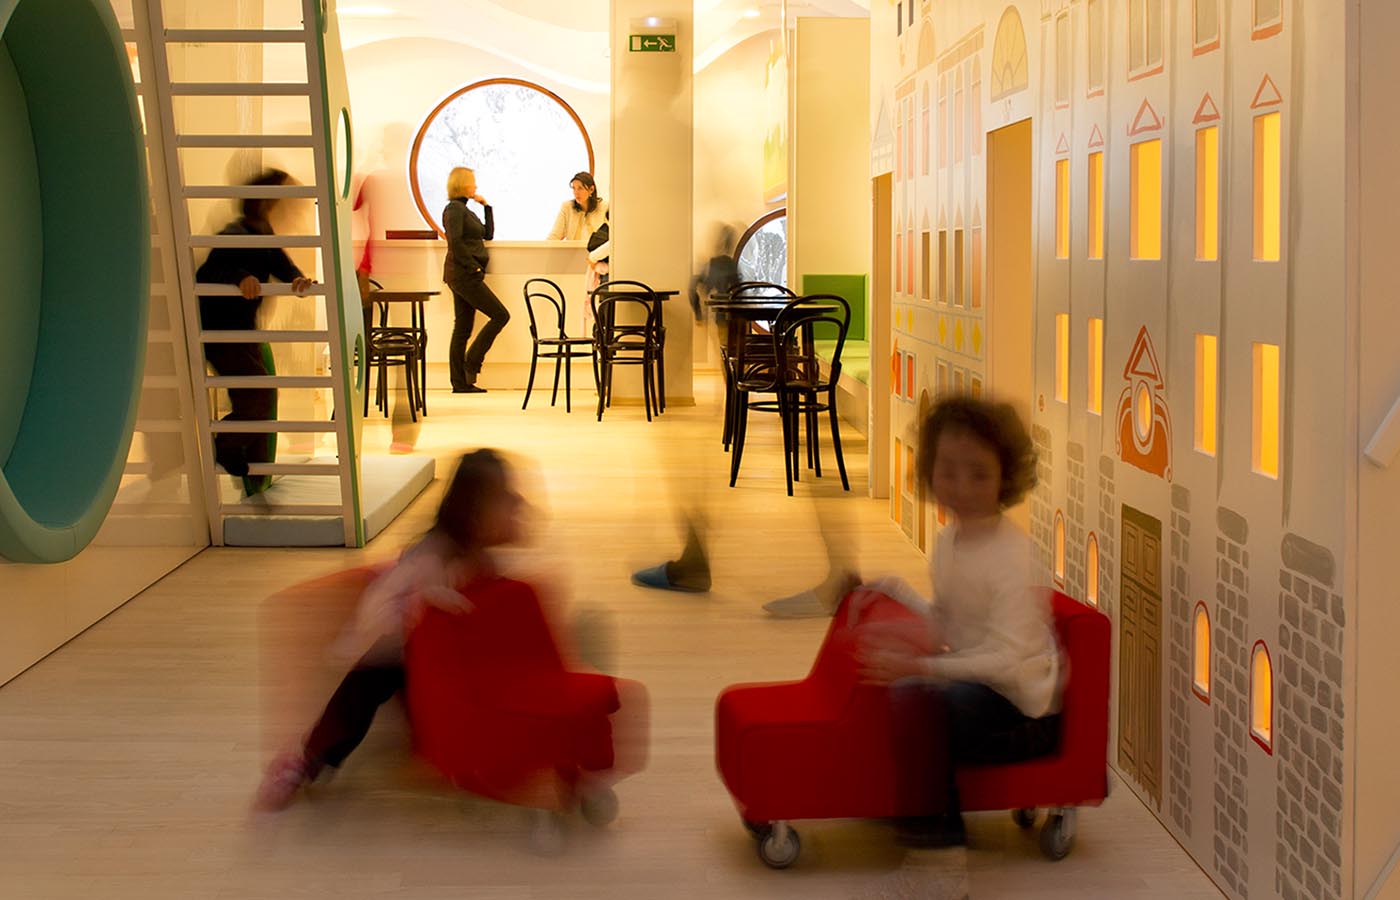 Notranjost Male ulice s pisanimi stenami, rdečimi fotelji in razposajenimi otroci.